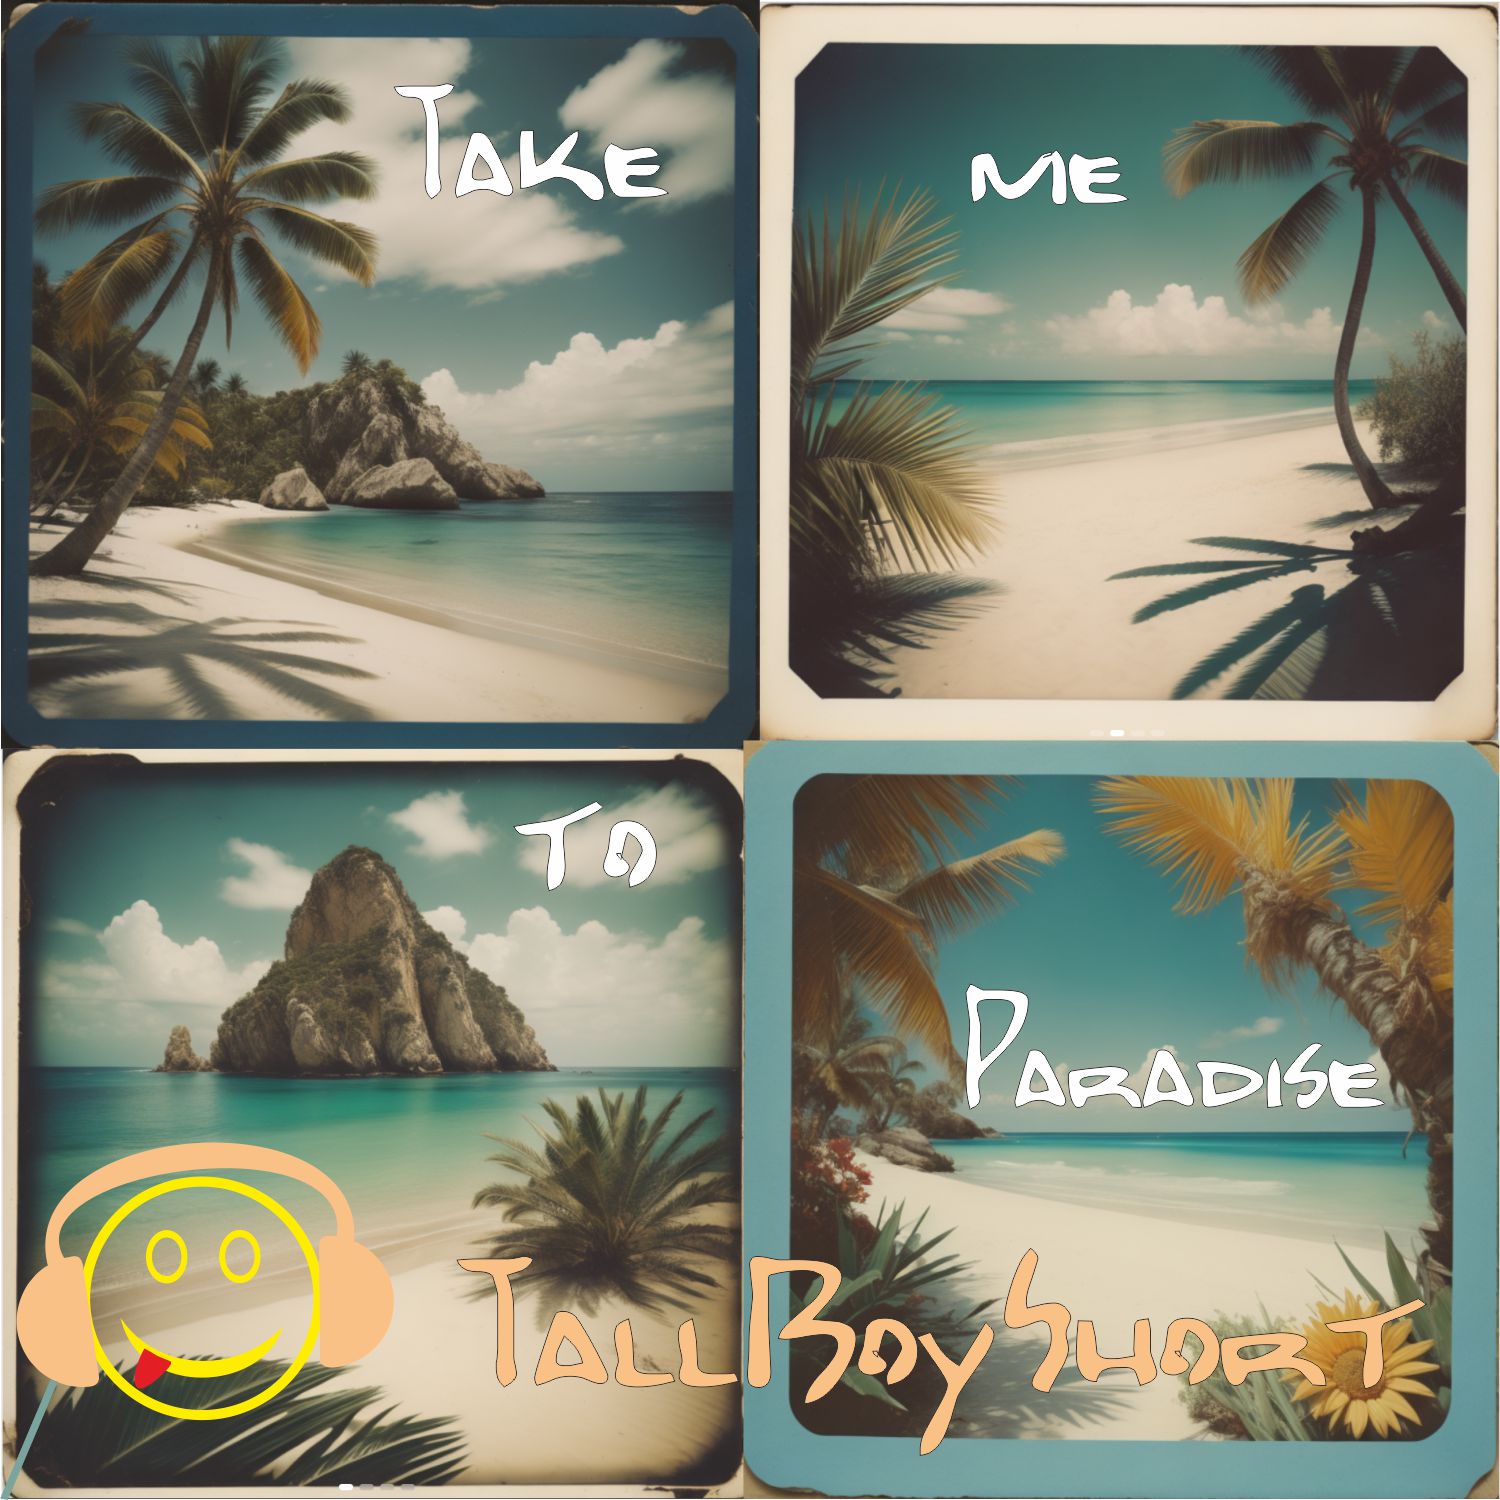 TBS - Take me to Paradise